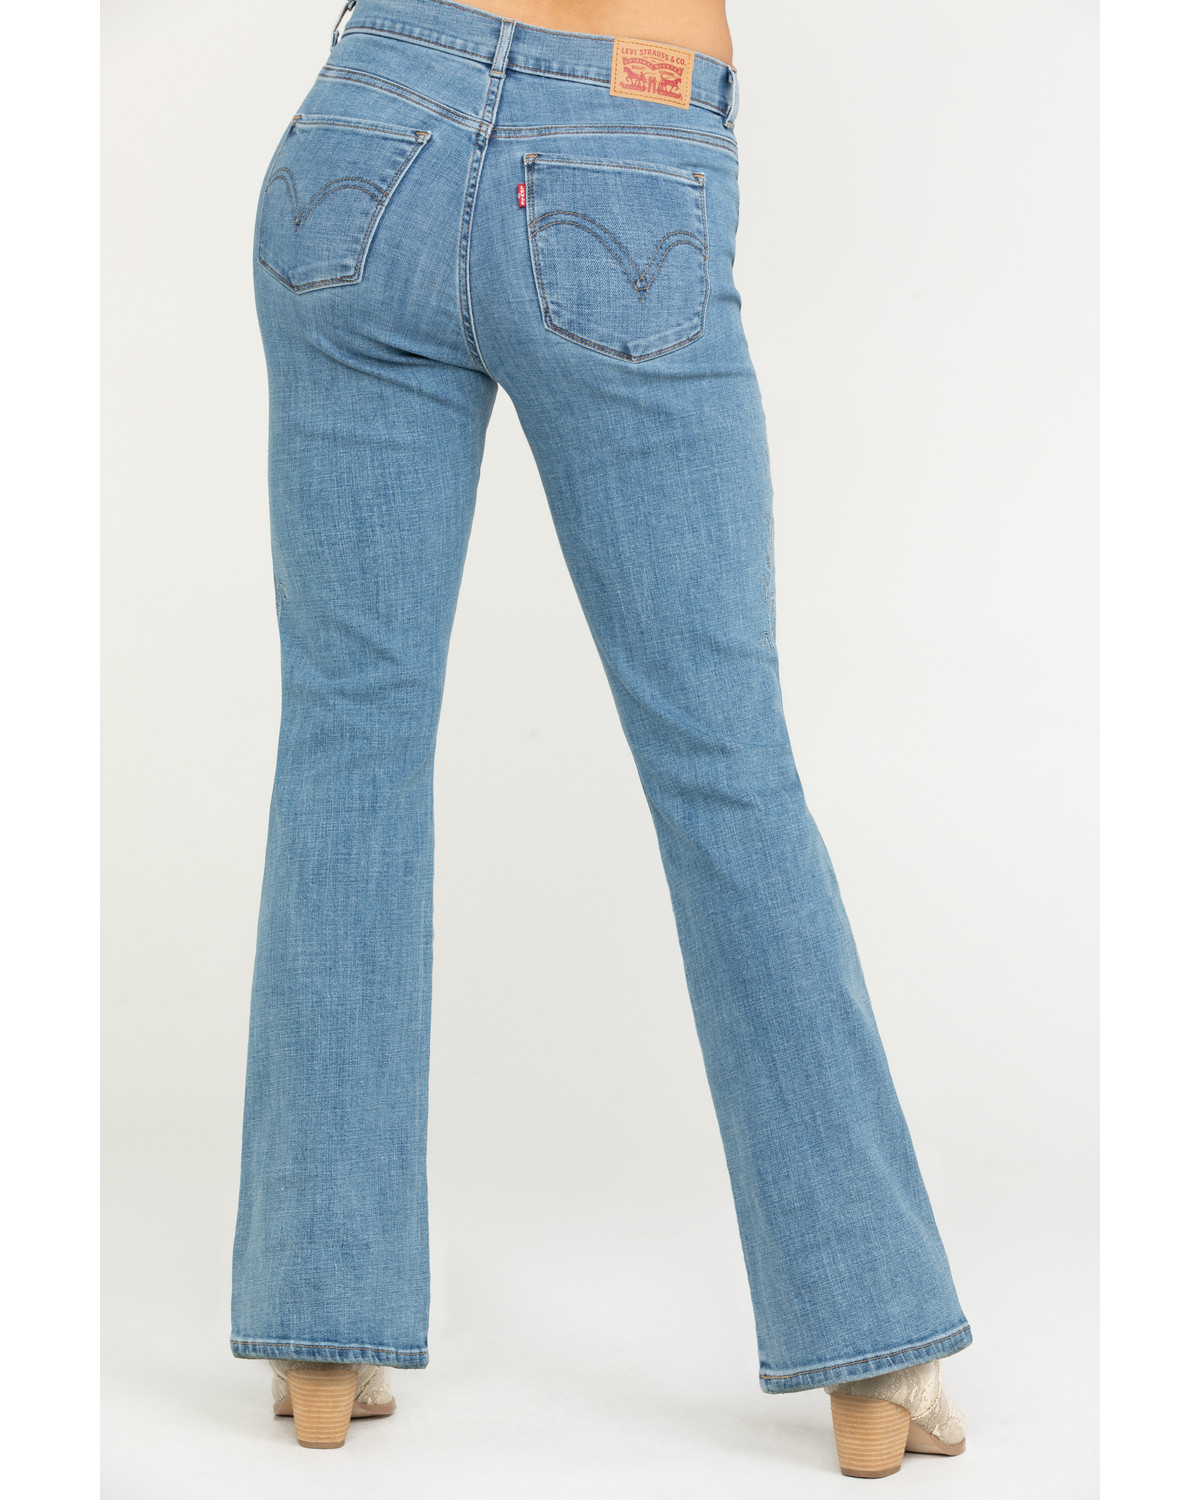 levis bootcut jeans